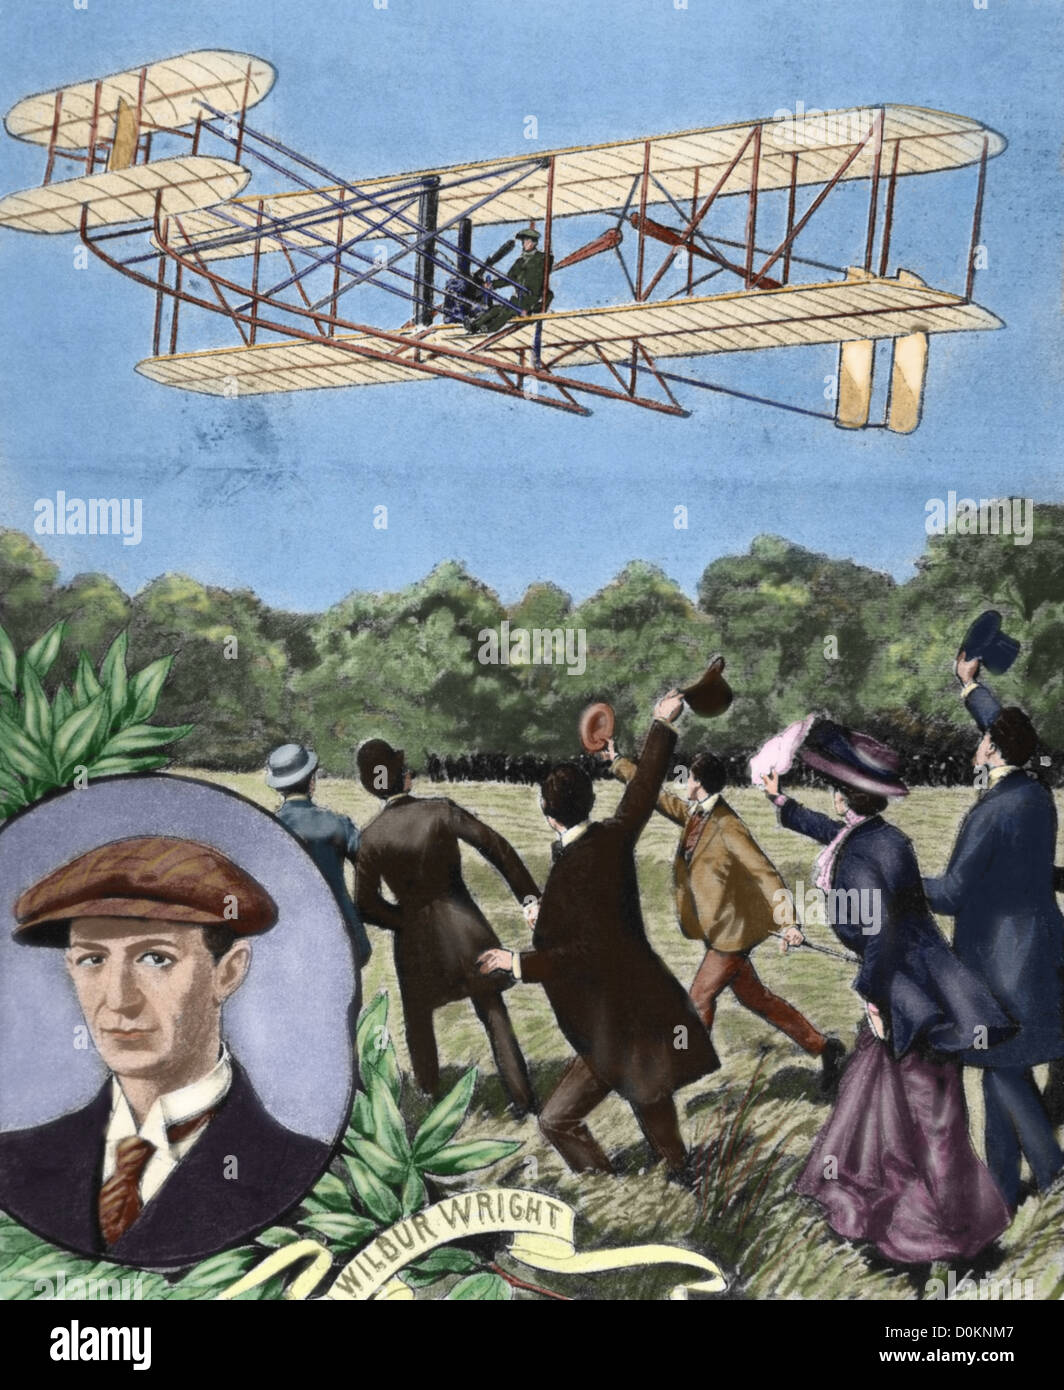 Wilbur Wright (1867-1912). Amerikanischer Flieger. Flugzeug fliegt über das Feld Anvours (Frankreich). Farbige Gravur. Stockfoto